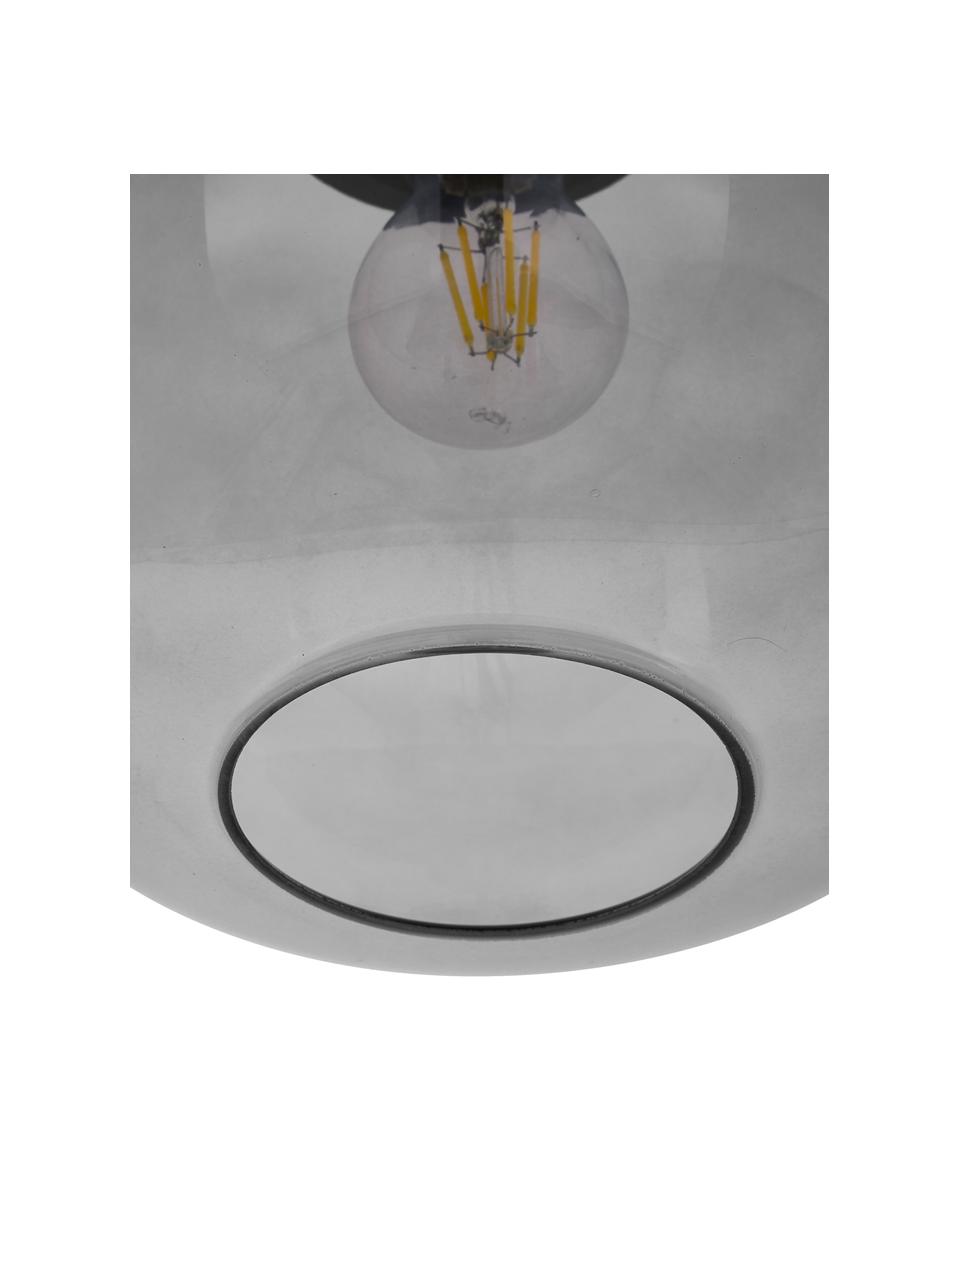 Lámpara de techo pequeña de vidrio ahumado Alton, Pantalla: vidrio, Estructura: metal recubierto, Anclaje: metal recubierto, Cable: cubierto en tela, Gris transparente, Ø 25 x Al 33 cm